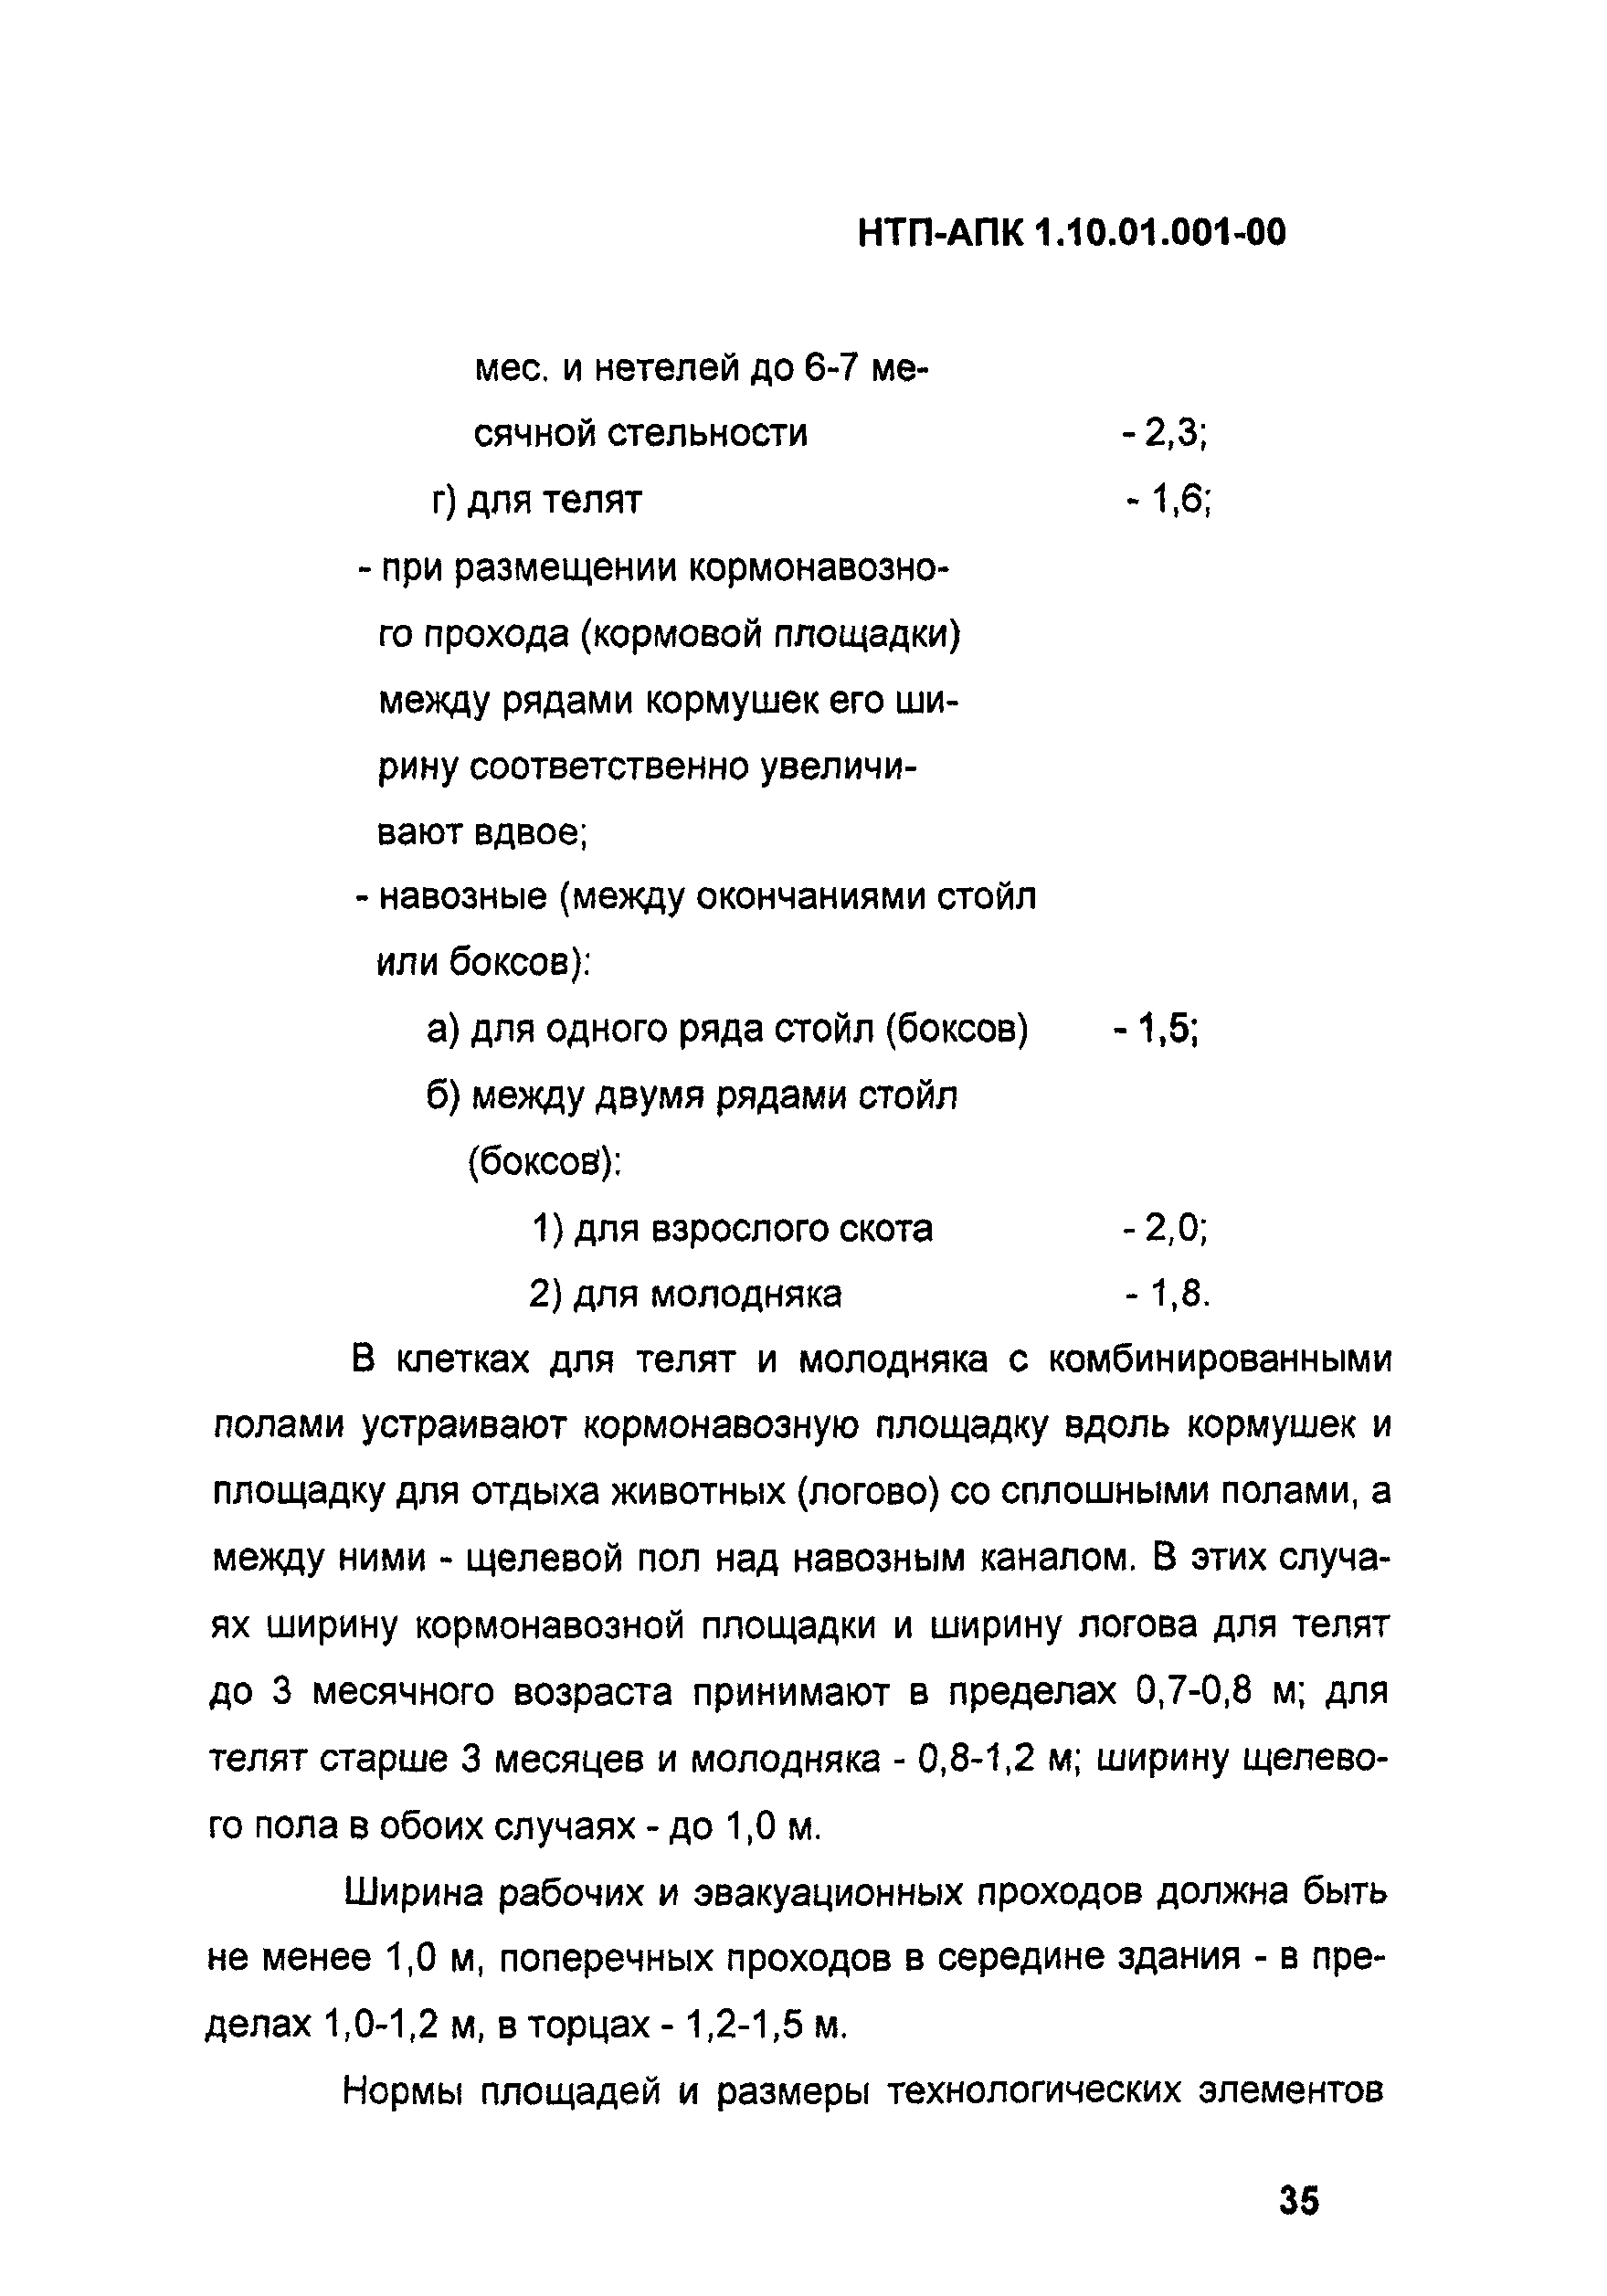 НТП-АПК 1.10.01.001-00